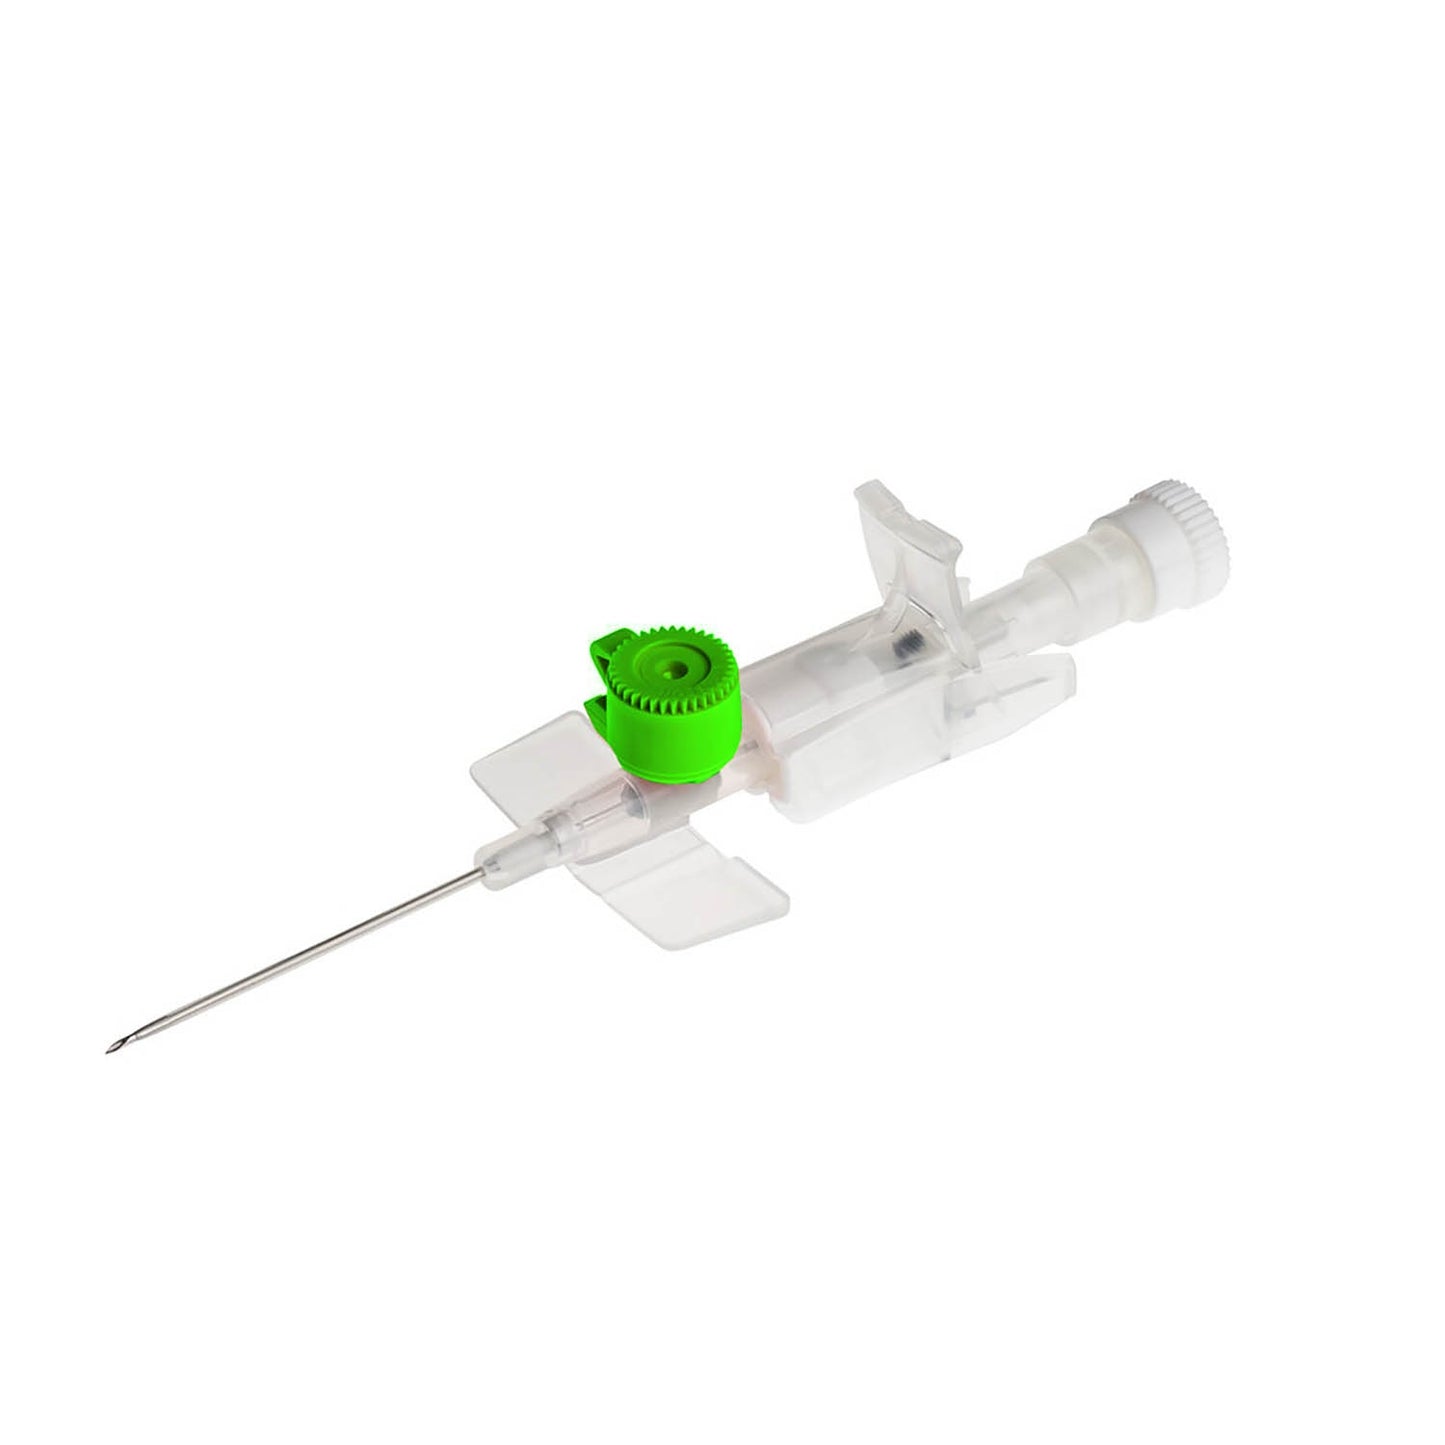 BD Venflon IV Catheter - 18g 45mm Ported & Winged x 50